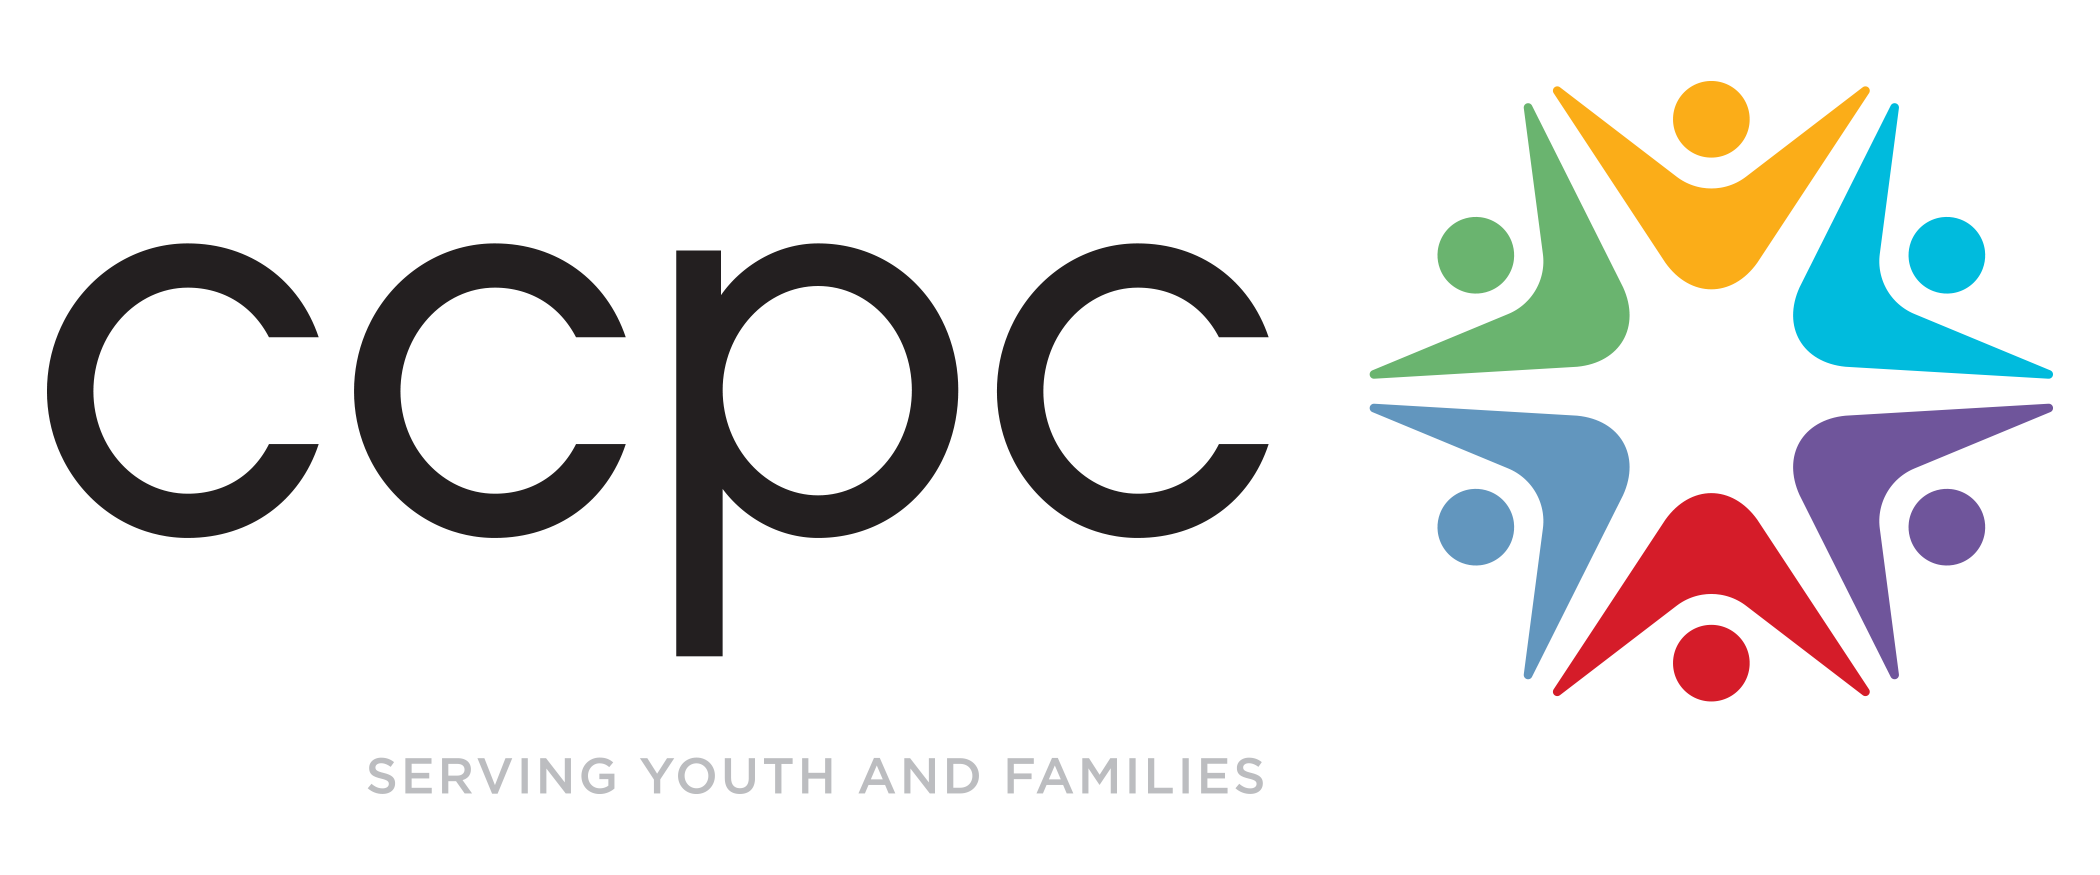 ccpc logo